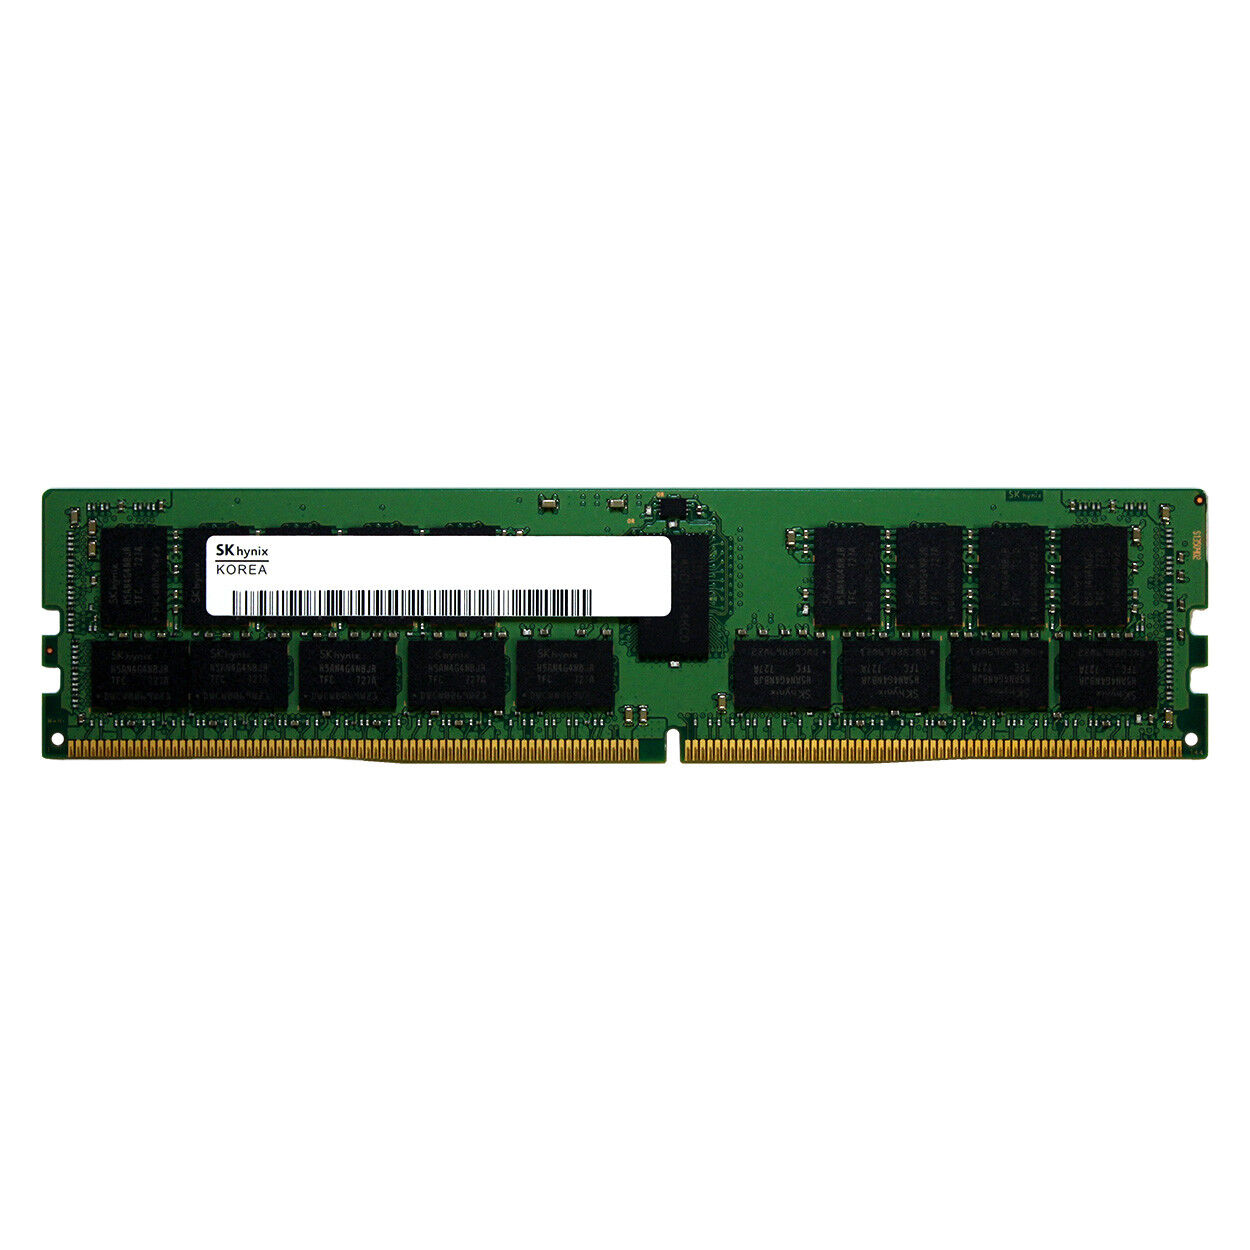 Hynix 16GB 2Rx4 PC4-17000 REG RDIMM HMA42GR7MFR4N-TF HMA42GR7AFR4N-TF Memory RAM